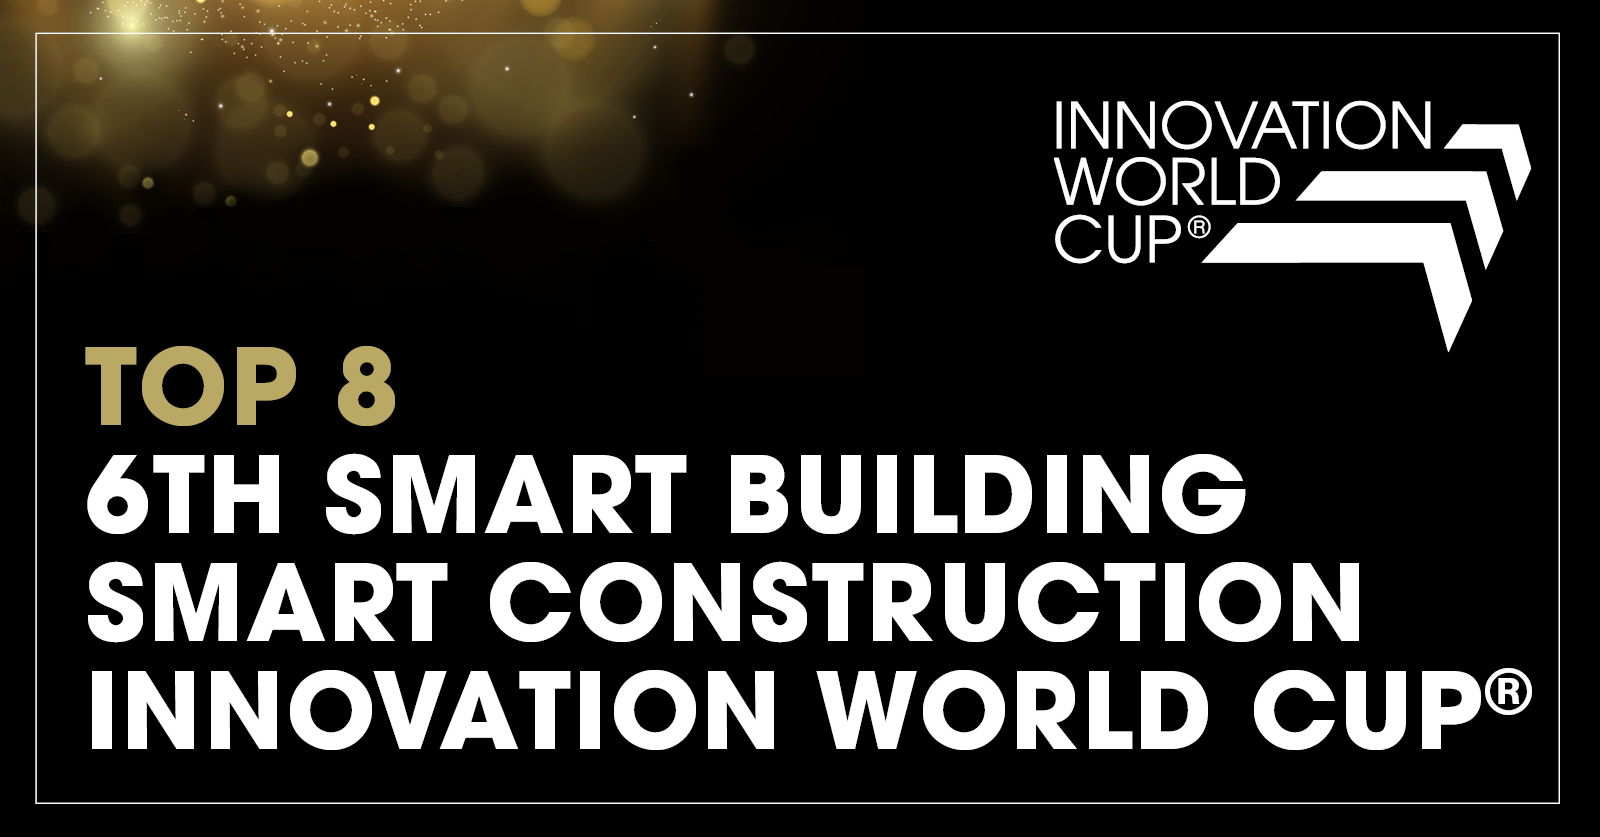 Na svetovnem prvenstvu v inovacijah © 2023 v Münchnu je bil evropski strokovnjak za HVAC Hysopt priznan kot eden vodilnih svetovnih inovatorjev pametnih zgradb in pametne gradnje.